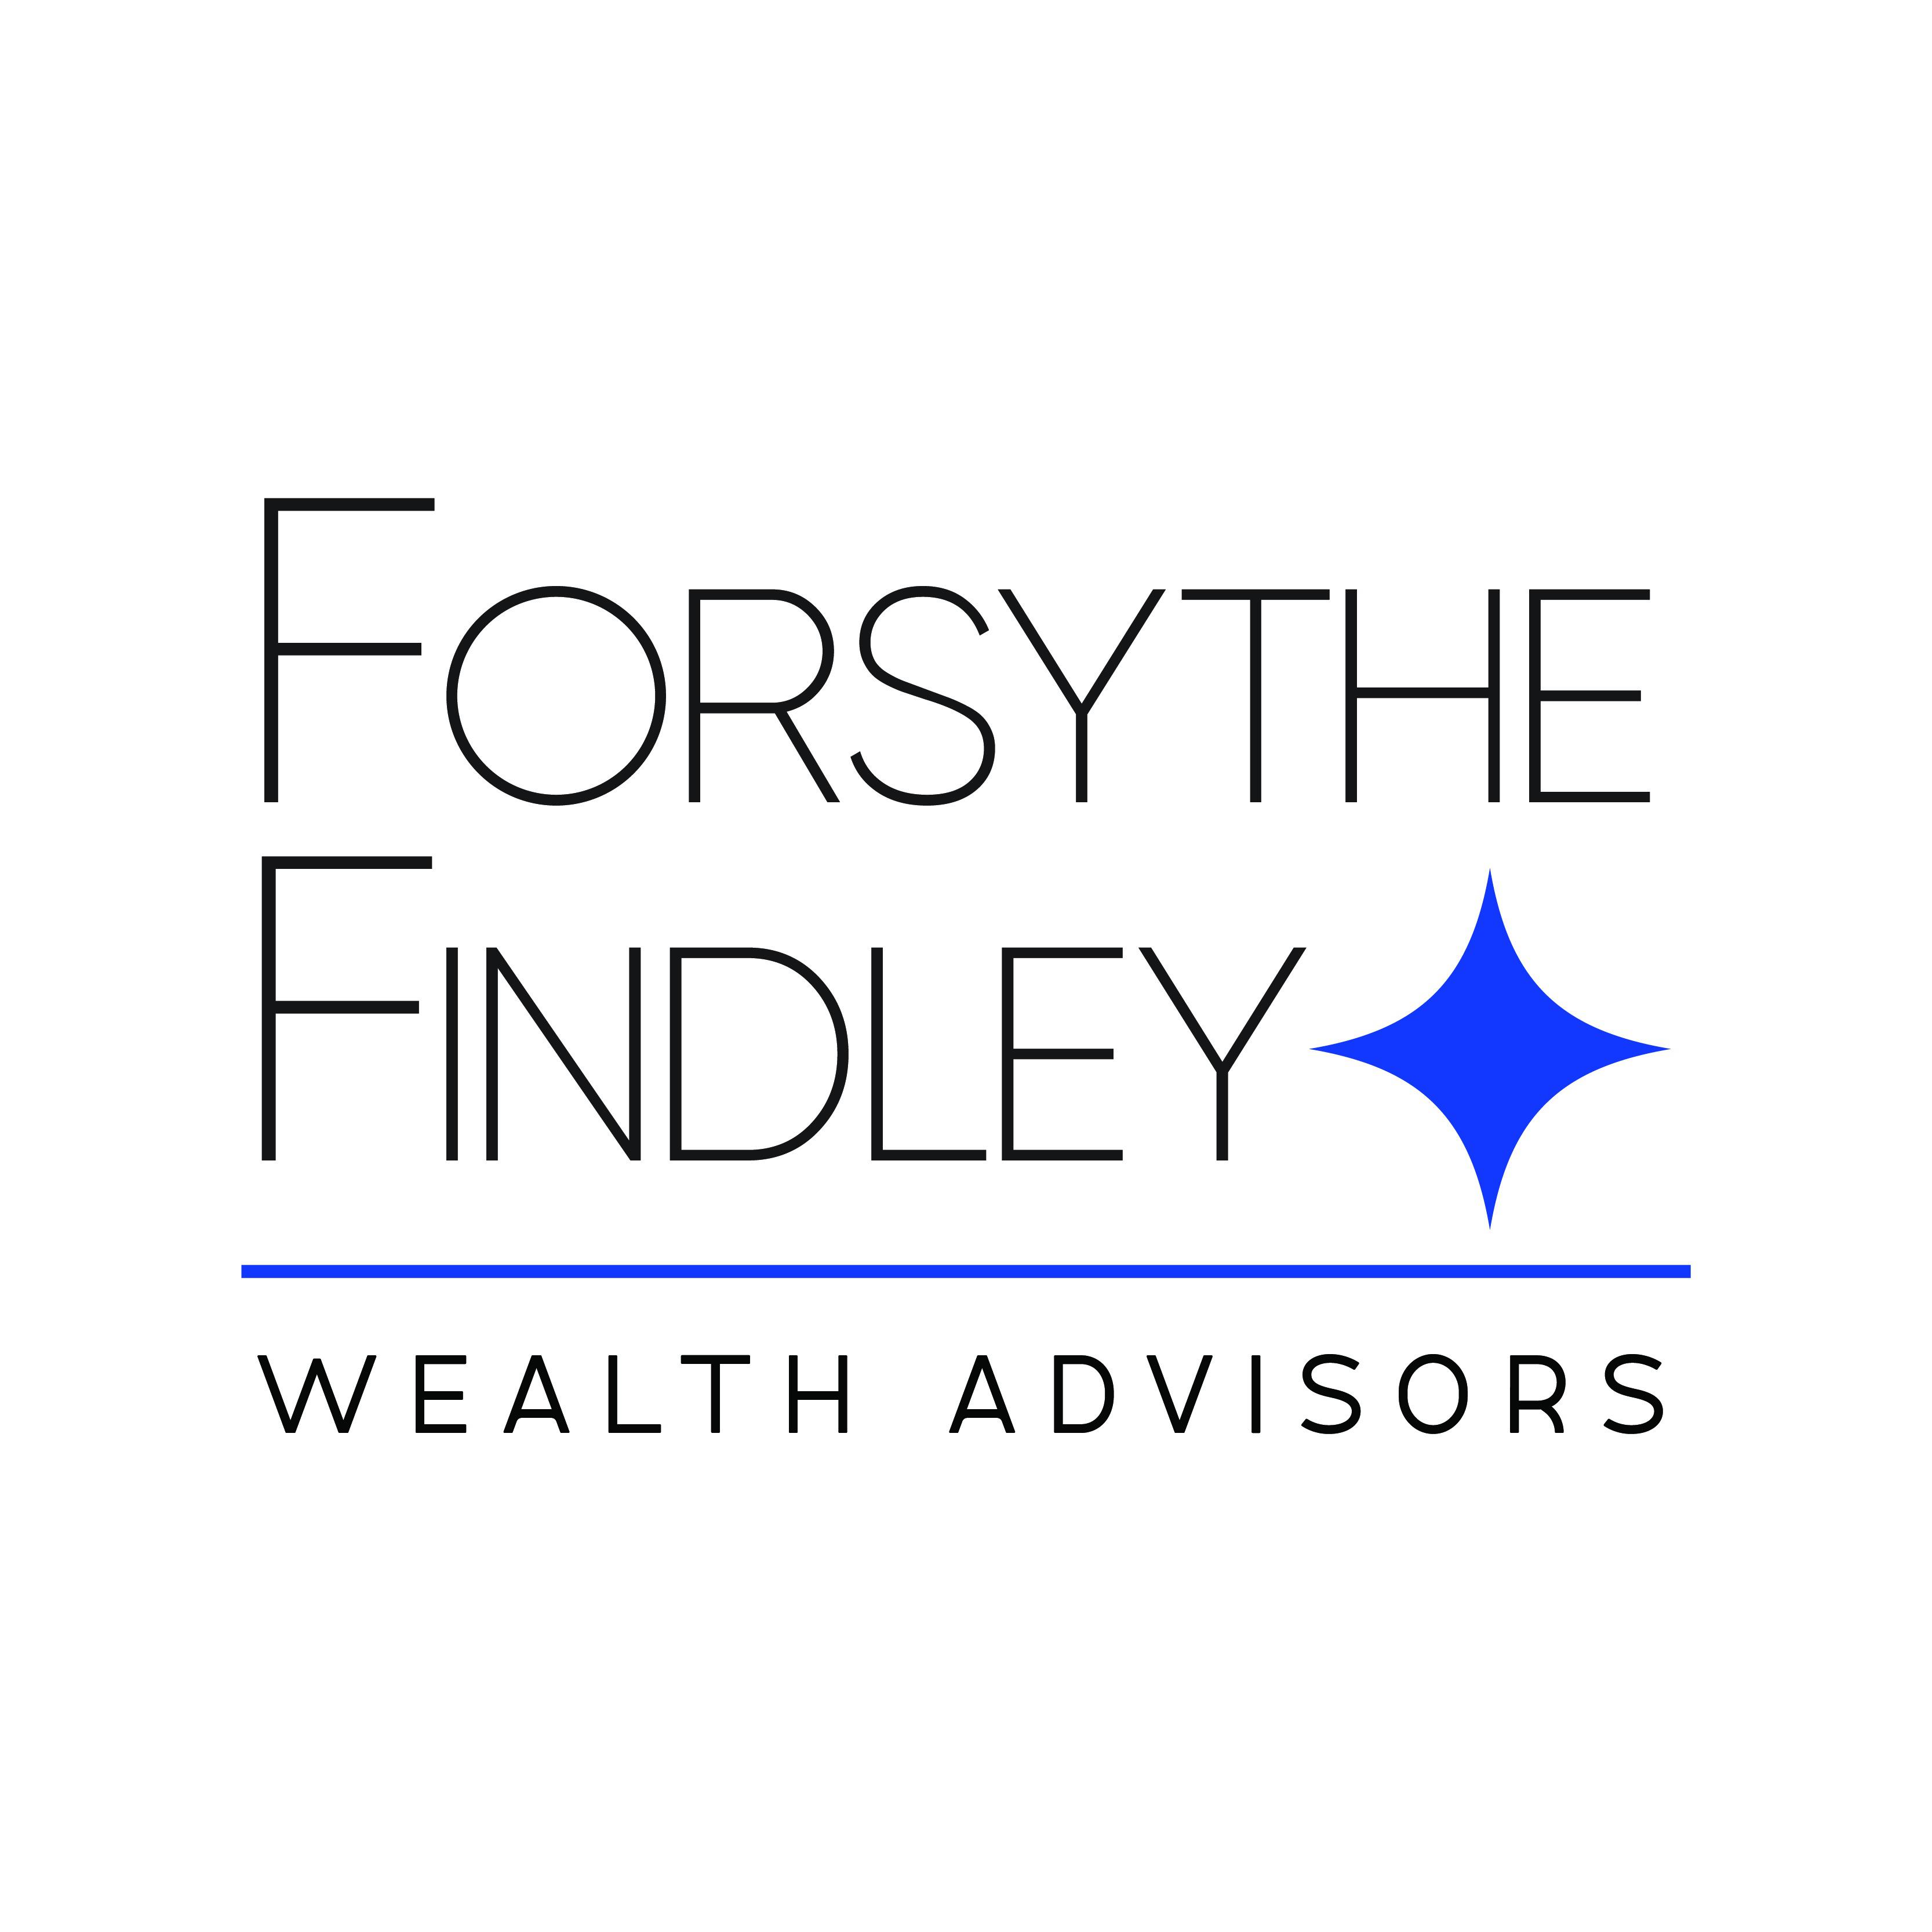 Forsythe Findley Wealth Advisors